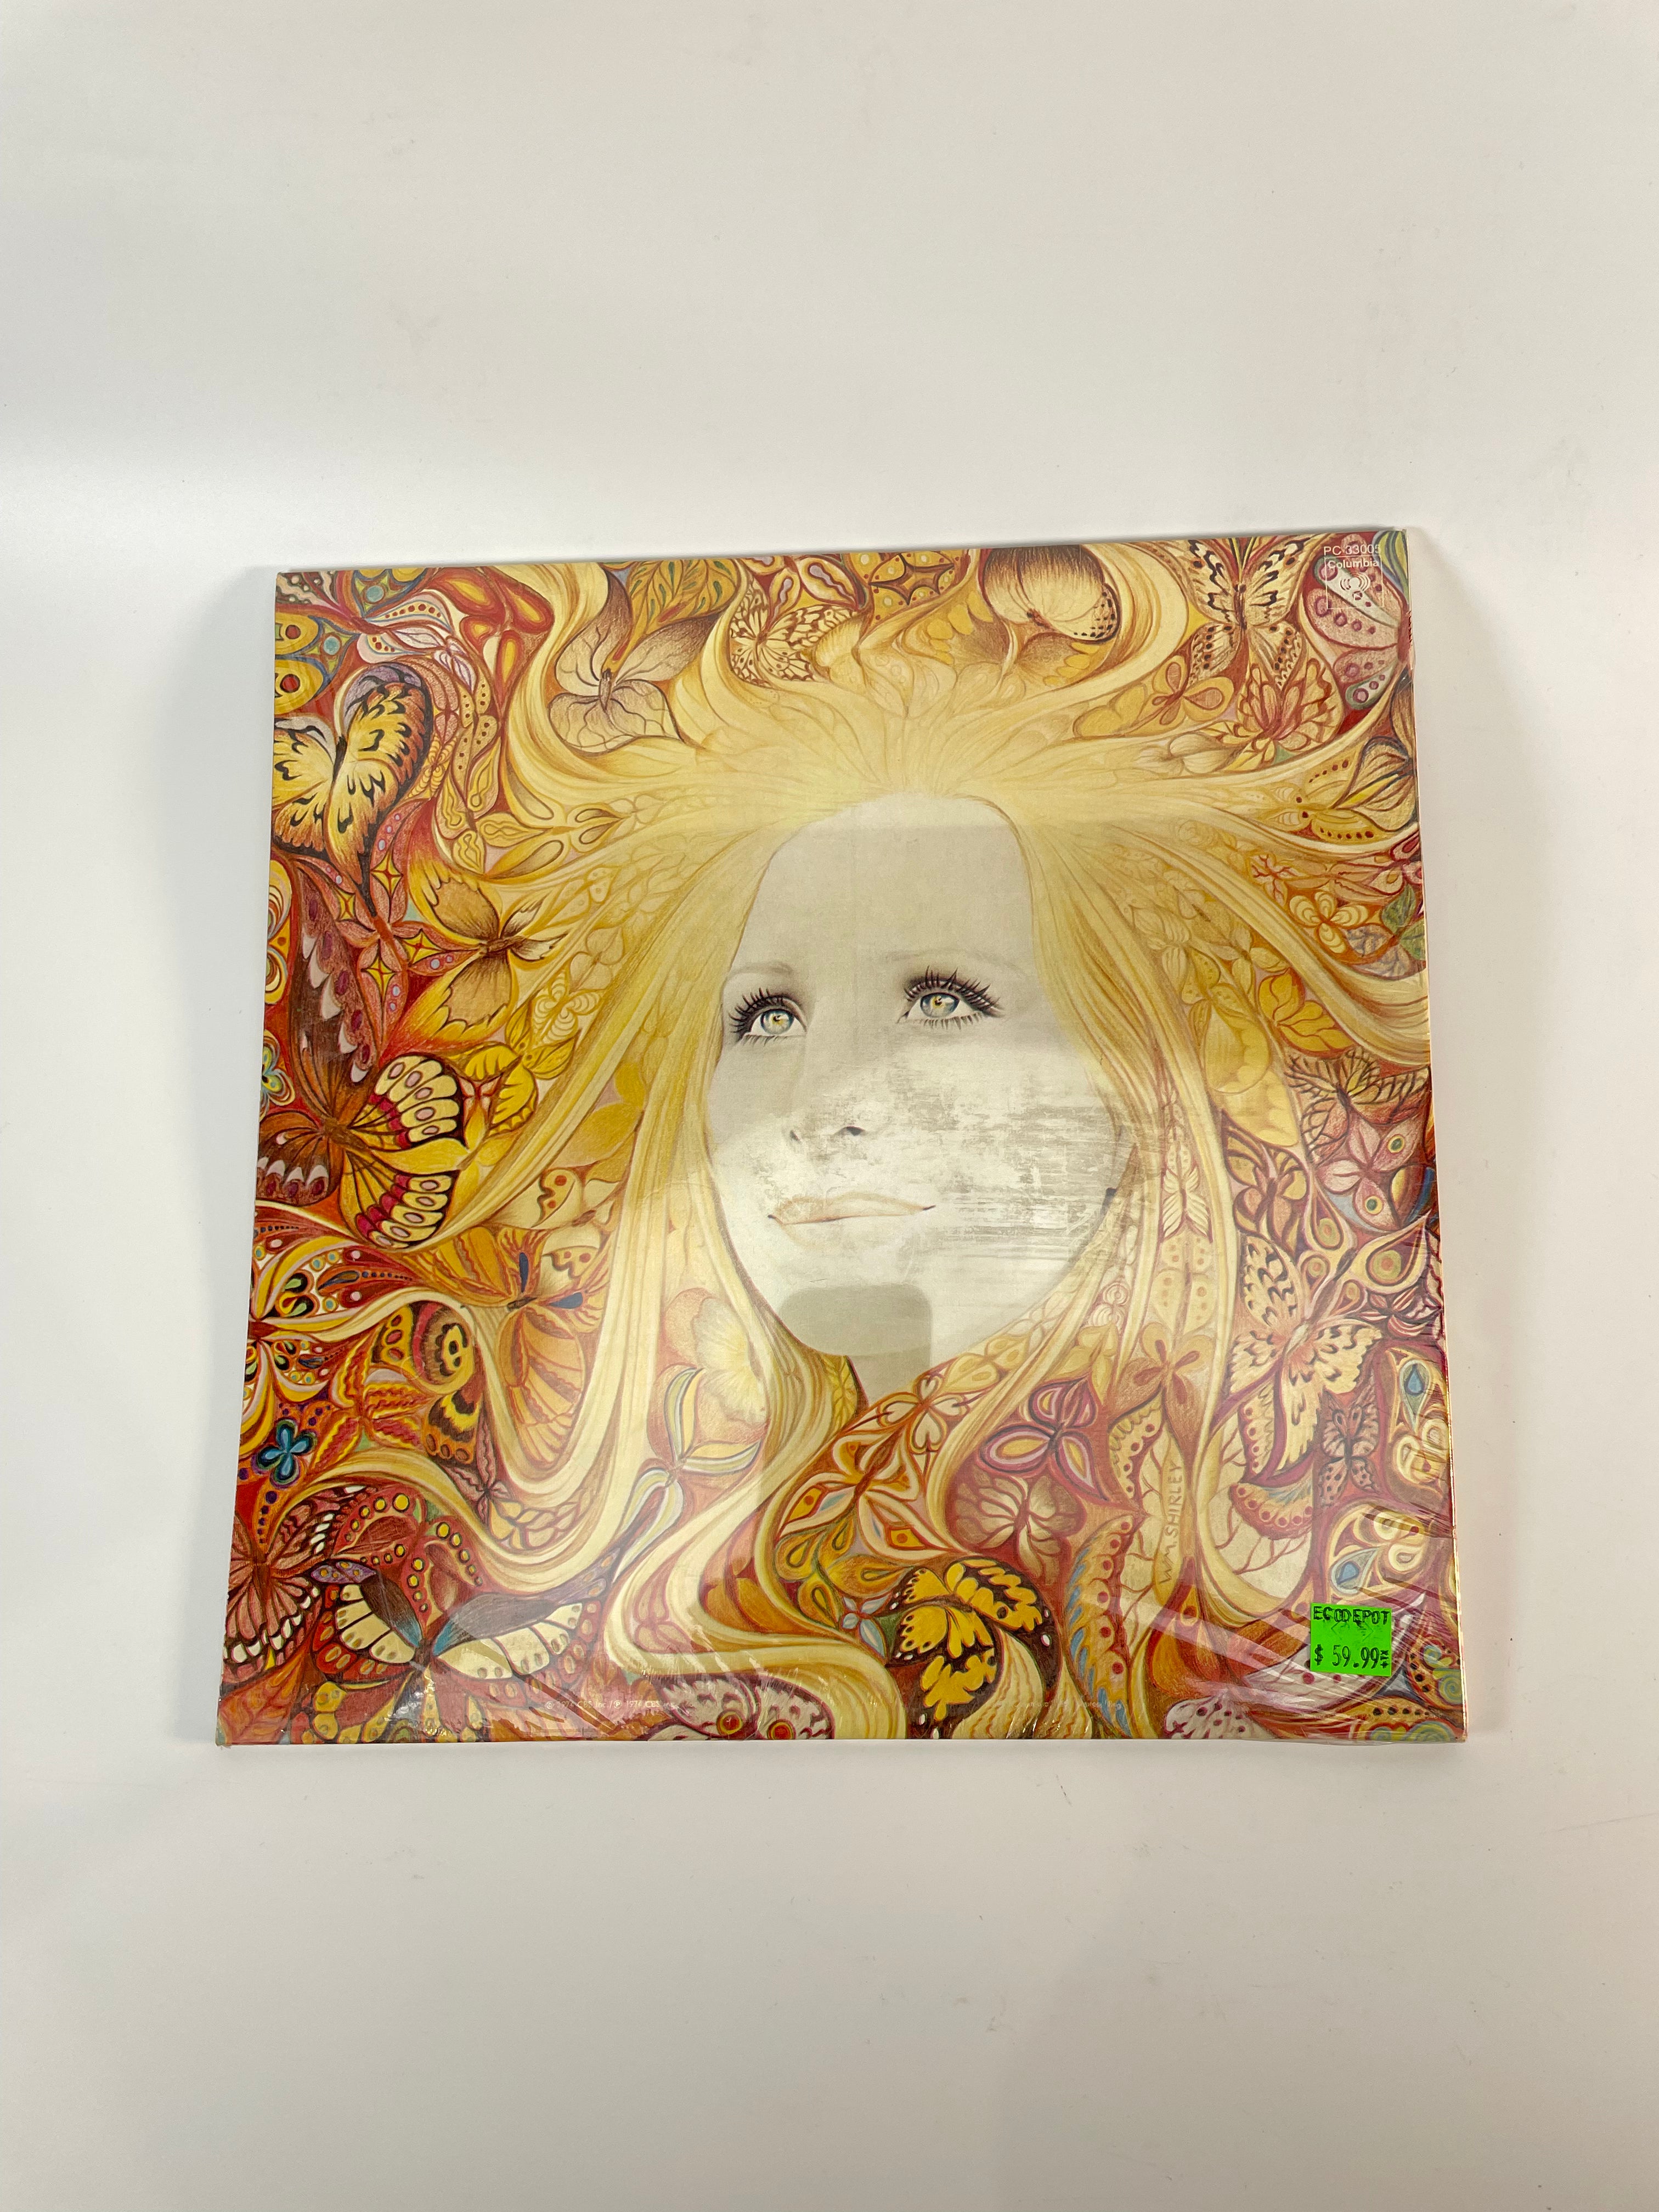 Nouveau scellé Barbra Streisand Butterfly Stereo Lp - Disque vinyle